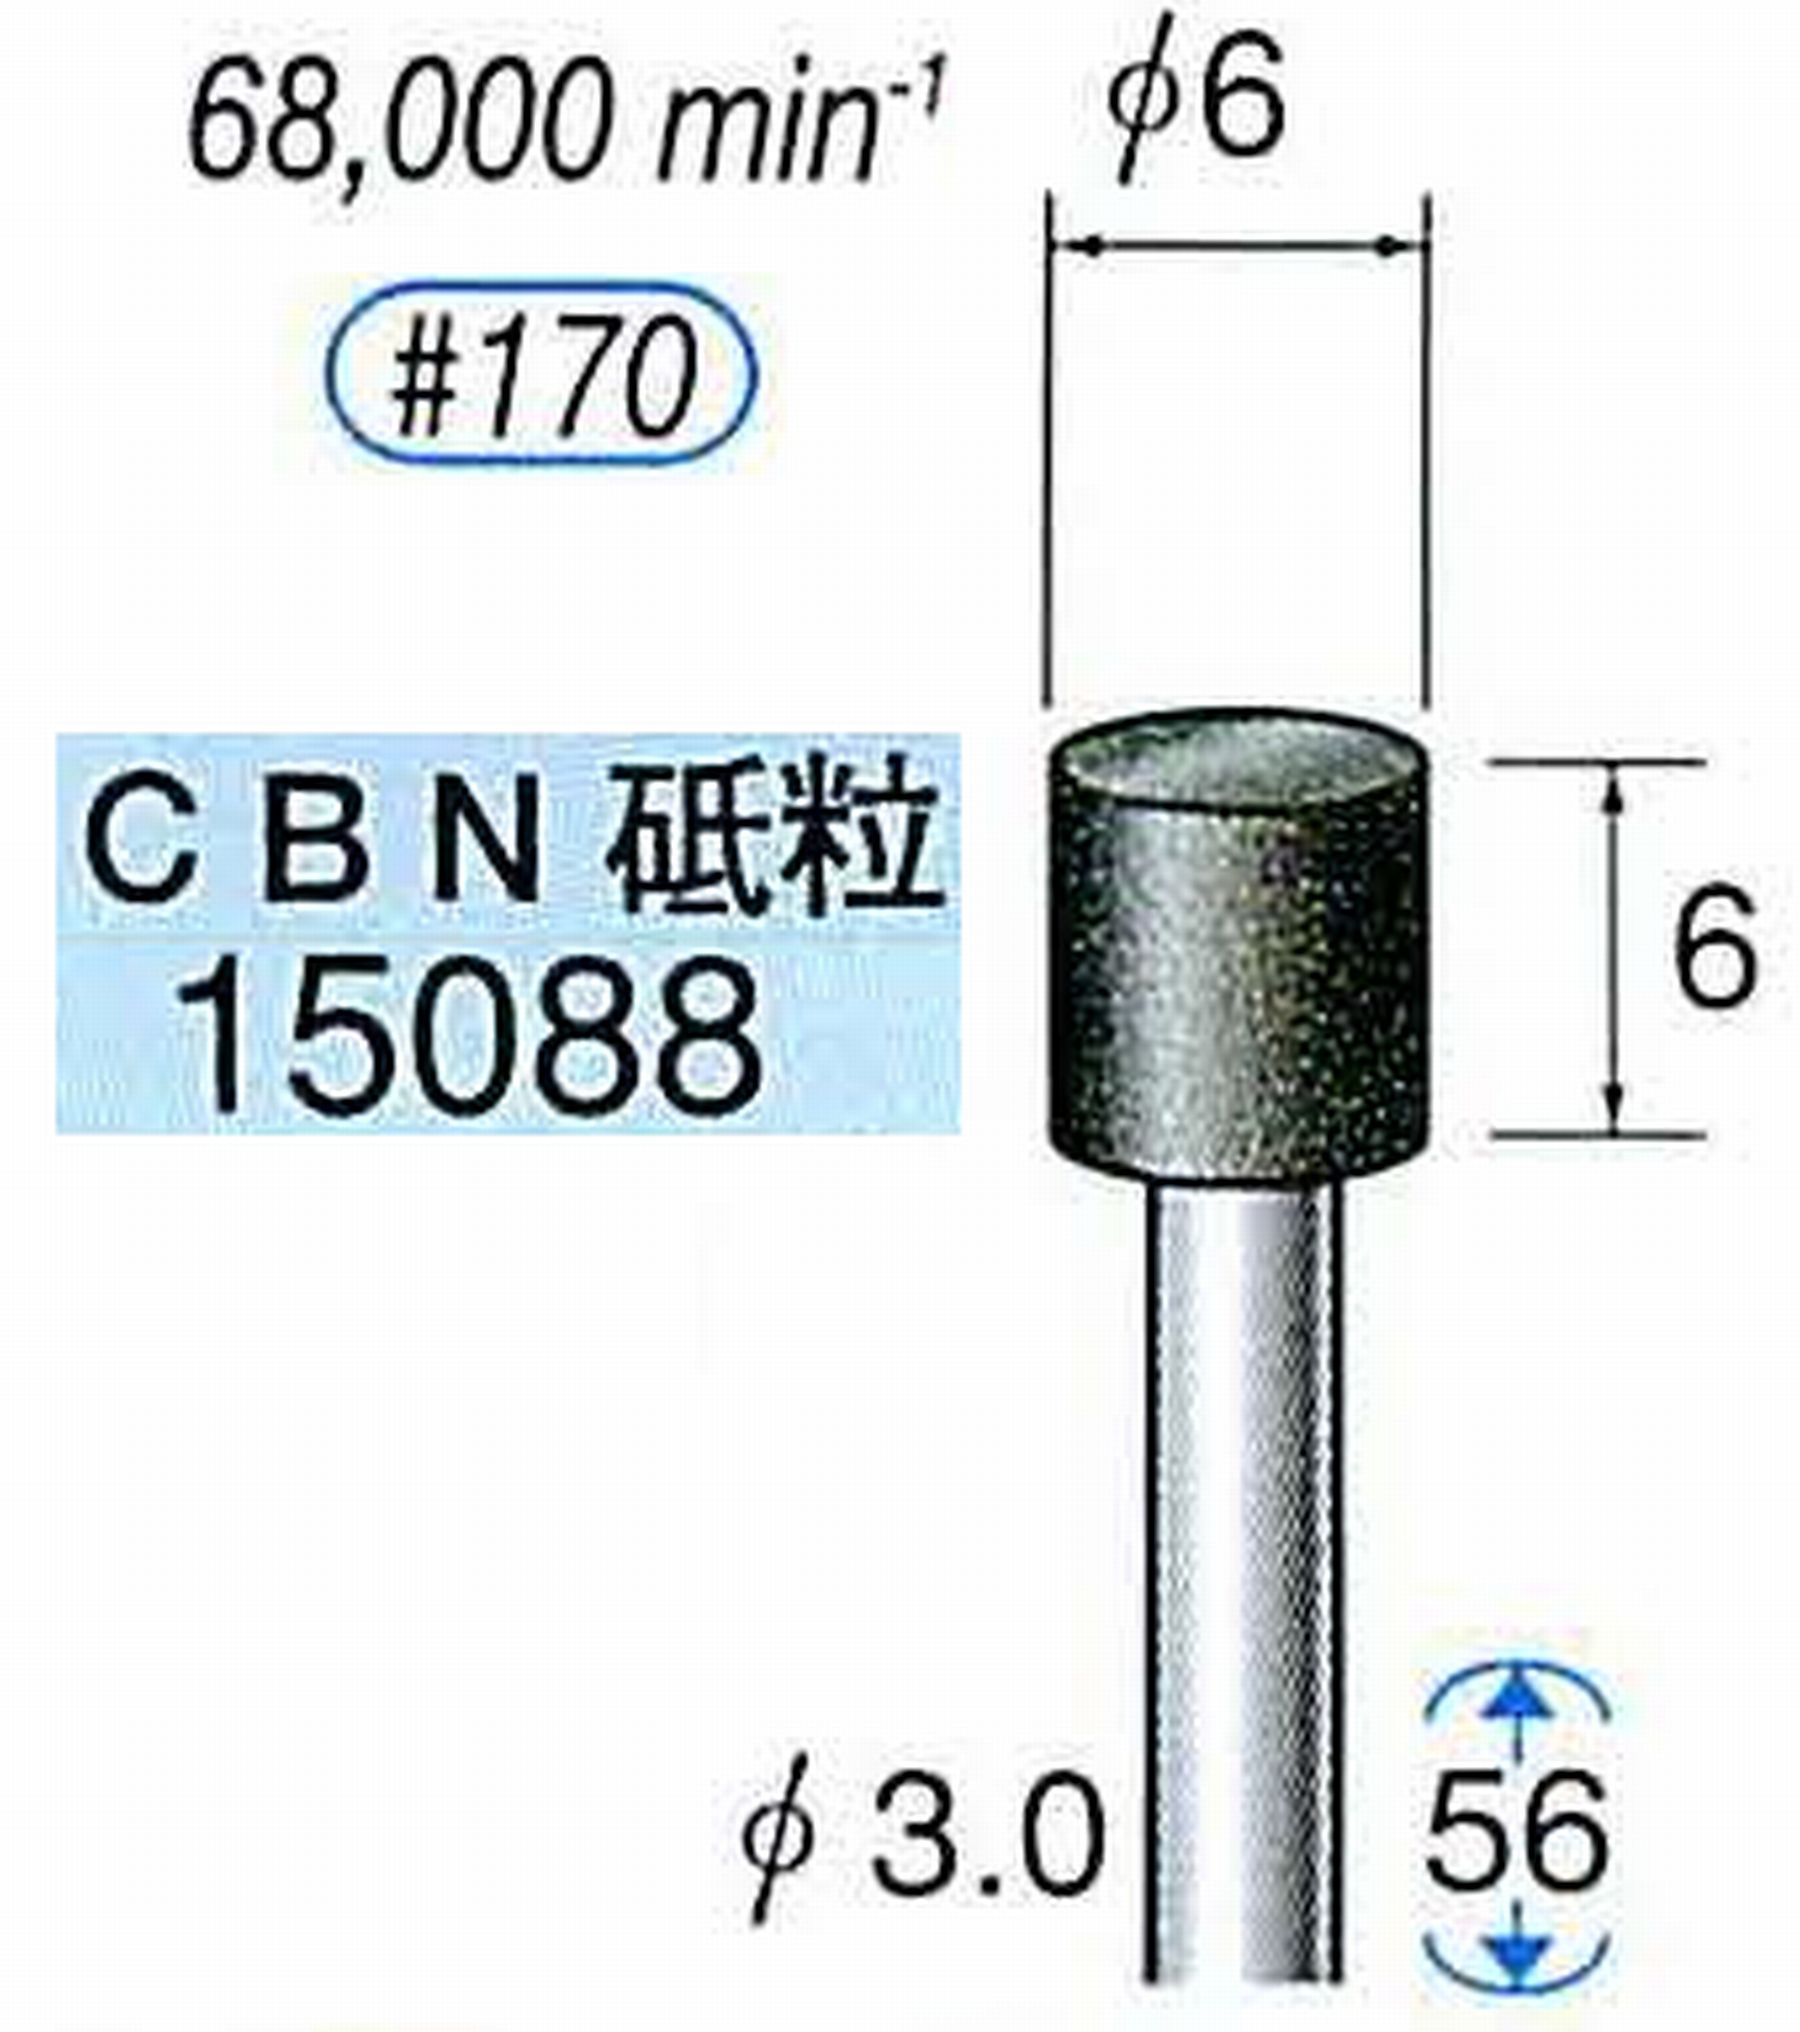 ナカニシ/NAKANISHI レジノイドダイヤモンド CBN砥粒 軸径(シャンク)φ3.0mm 15088